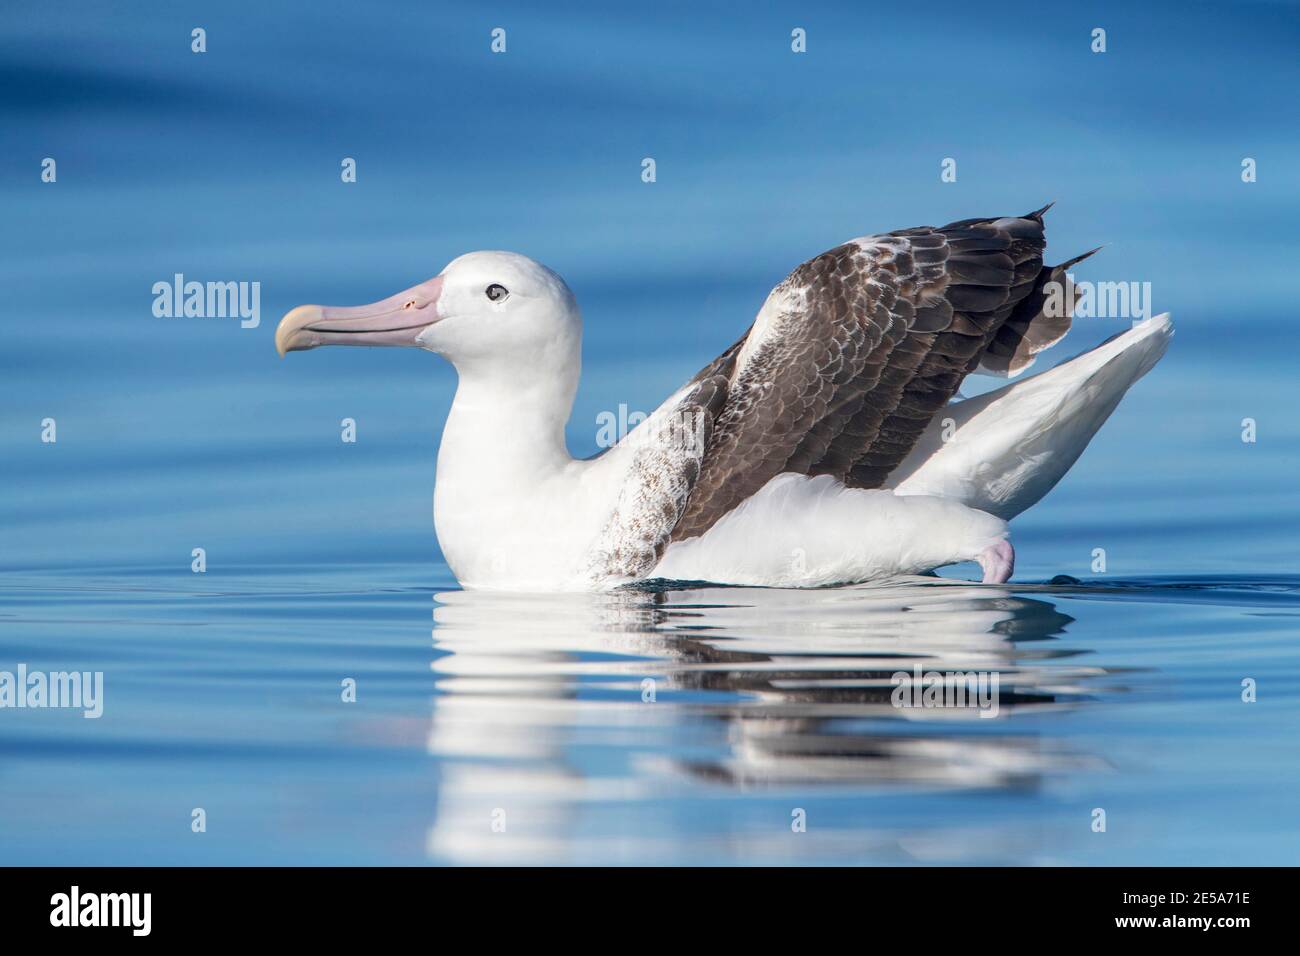 Royal albatross, Southern Royal Albatross (Diomedea epomophora), Adulti che nuotano su una superficie liscia dell'oceano, Nuova Zelanda, isole di Auckland Foto Stock